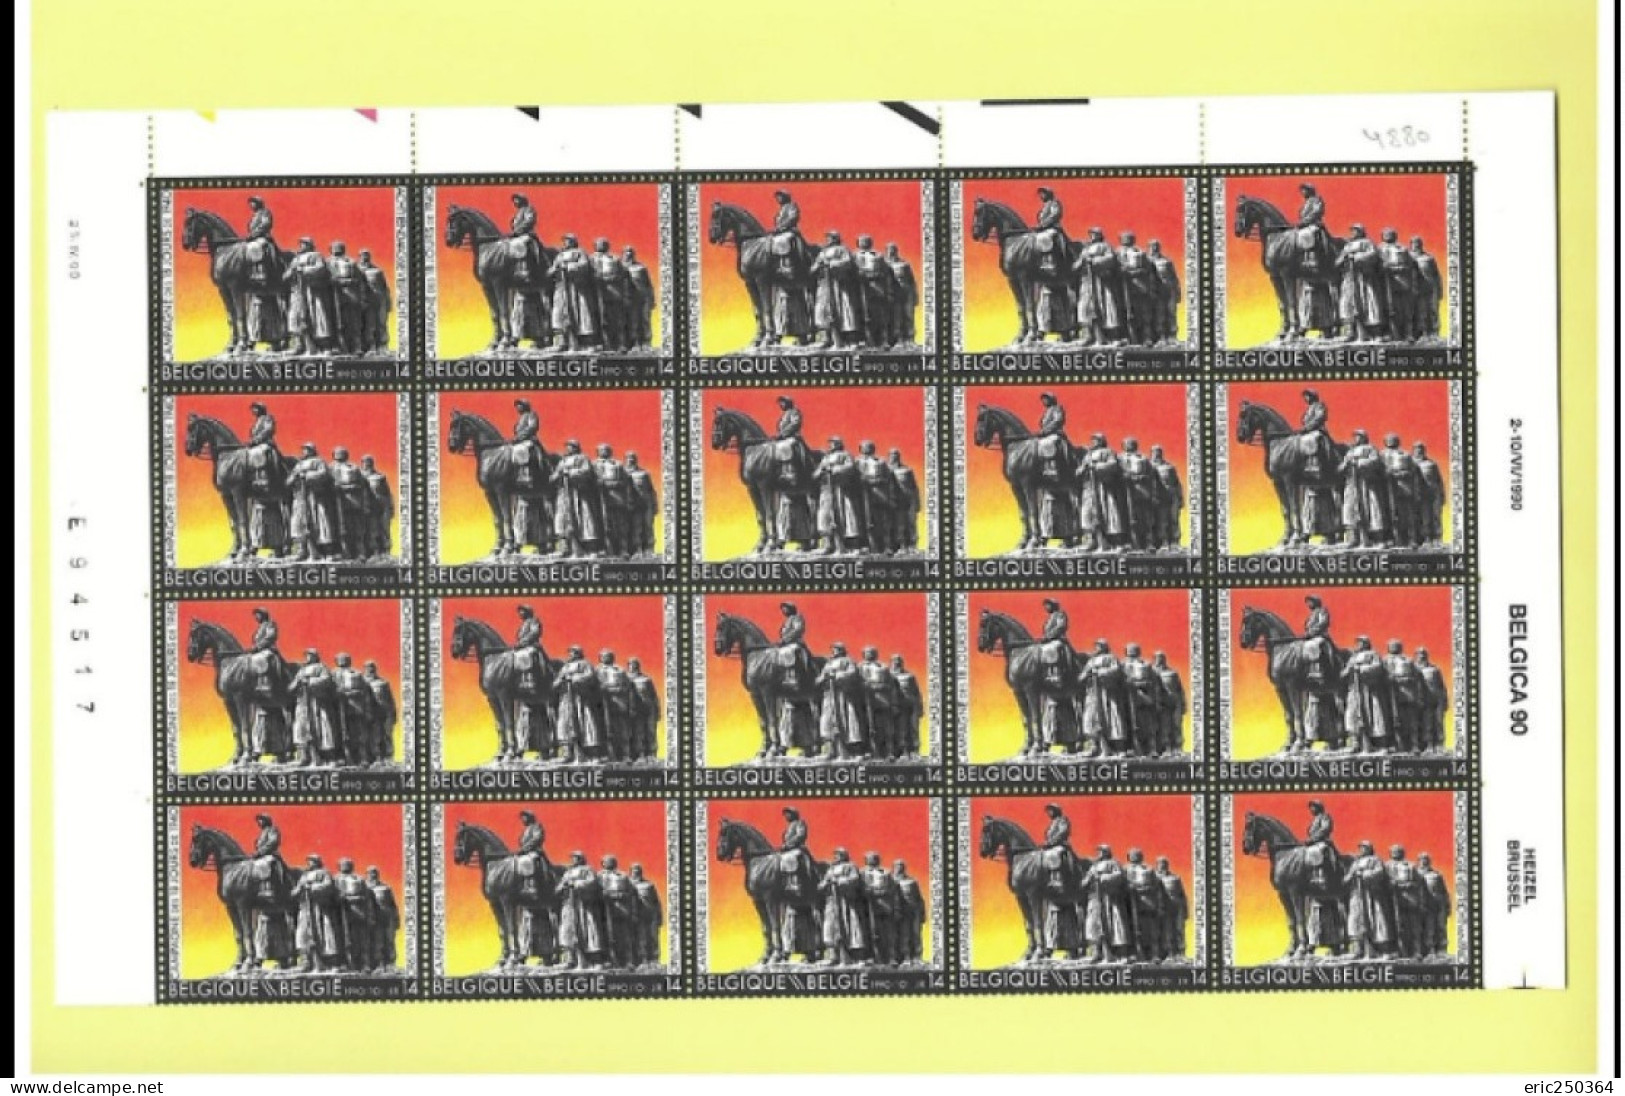 Superbe lot de 25 feuilles de timbres entières / BELGICA et ROYAUTE